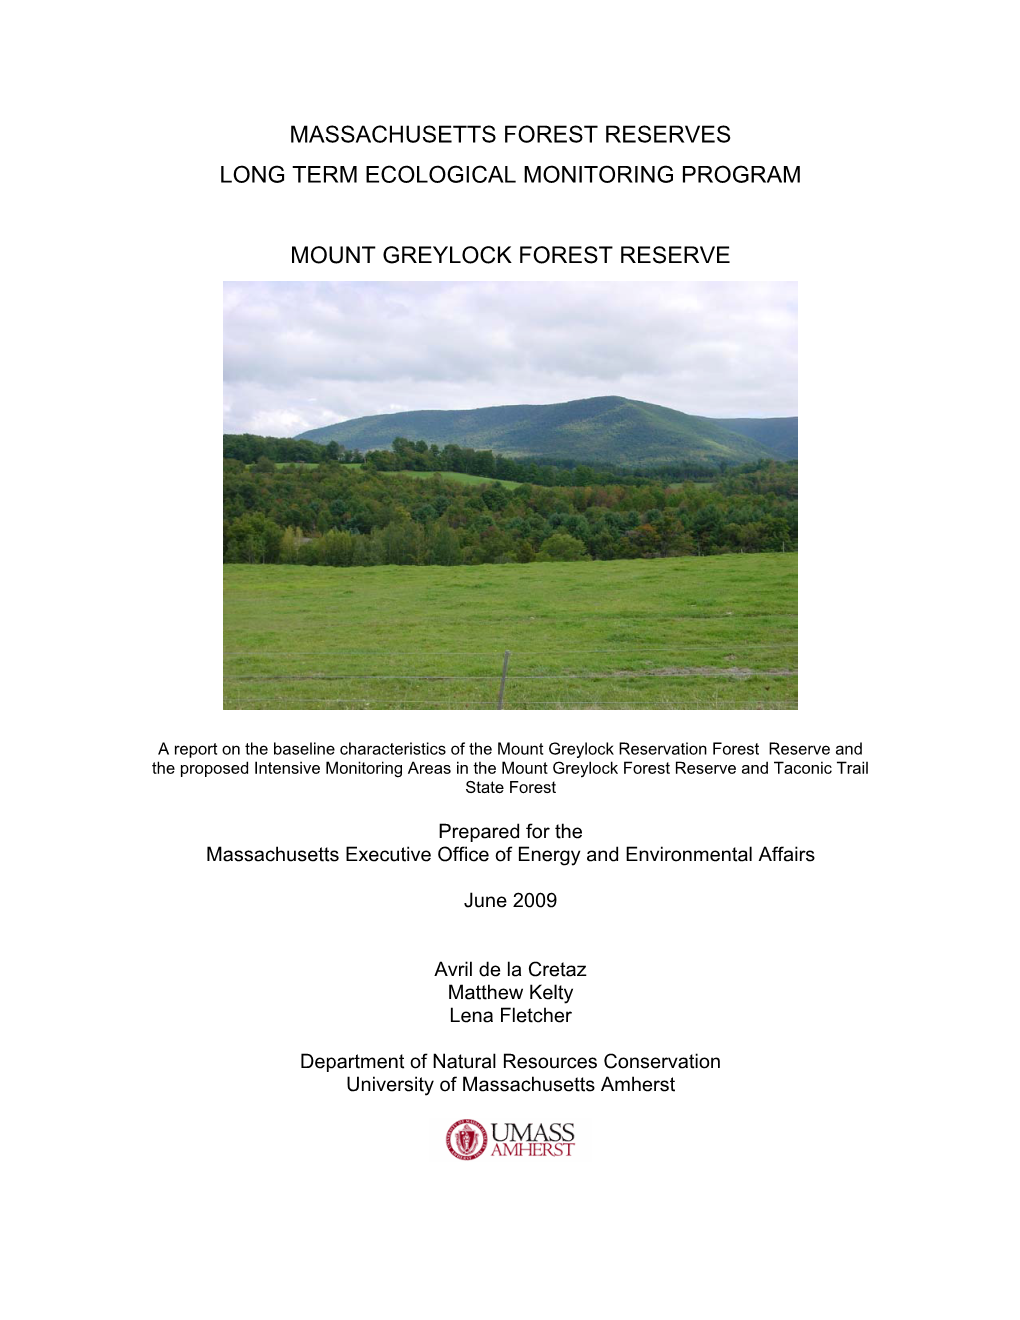 Massachusetts Forest Reserves Long Term Ecological Monitoring Program